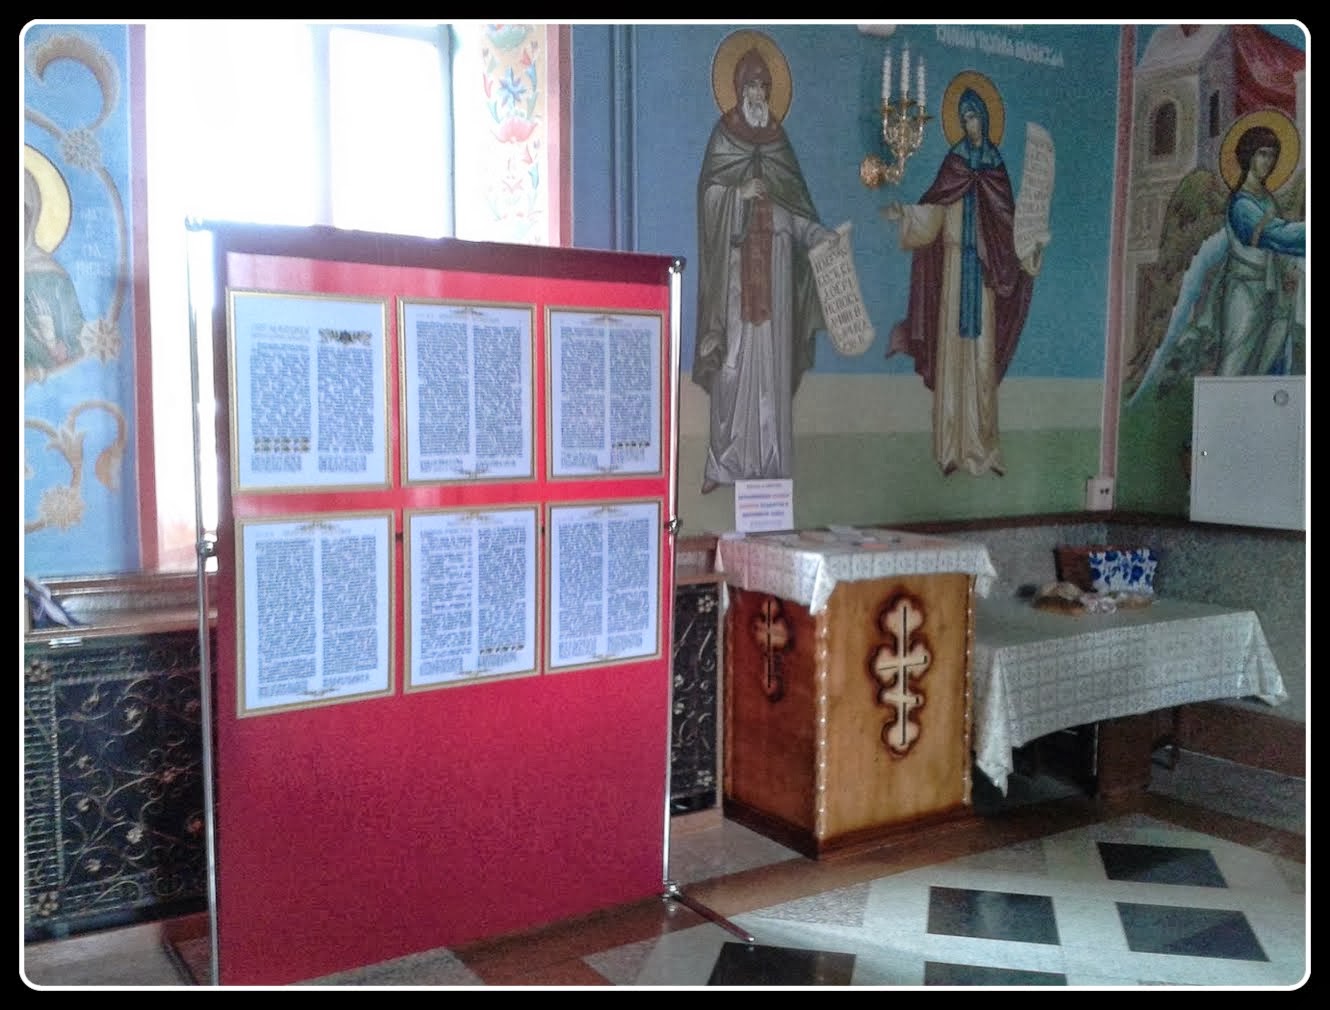 Вышитая Библия_Стенды в Храме Рождества Христова в городе Новокузнецке